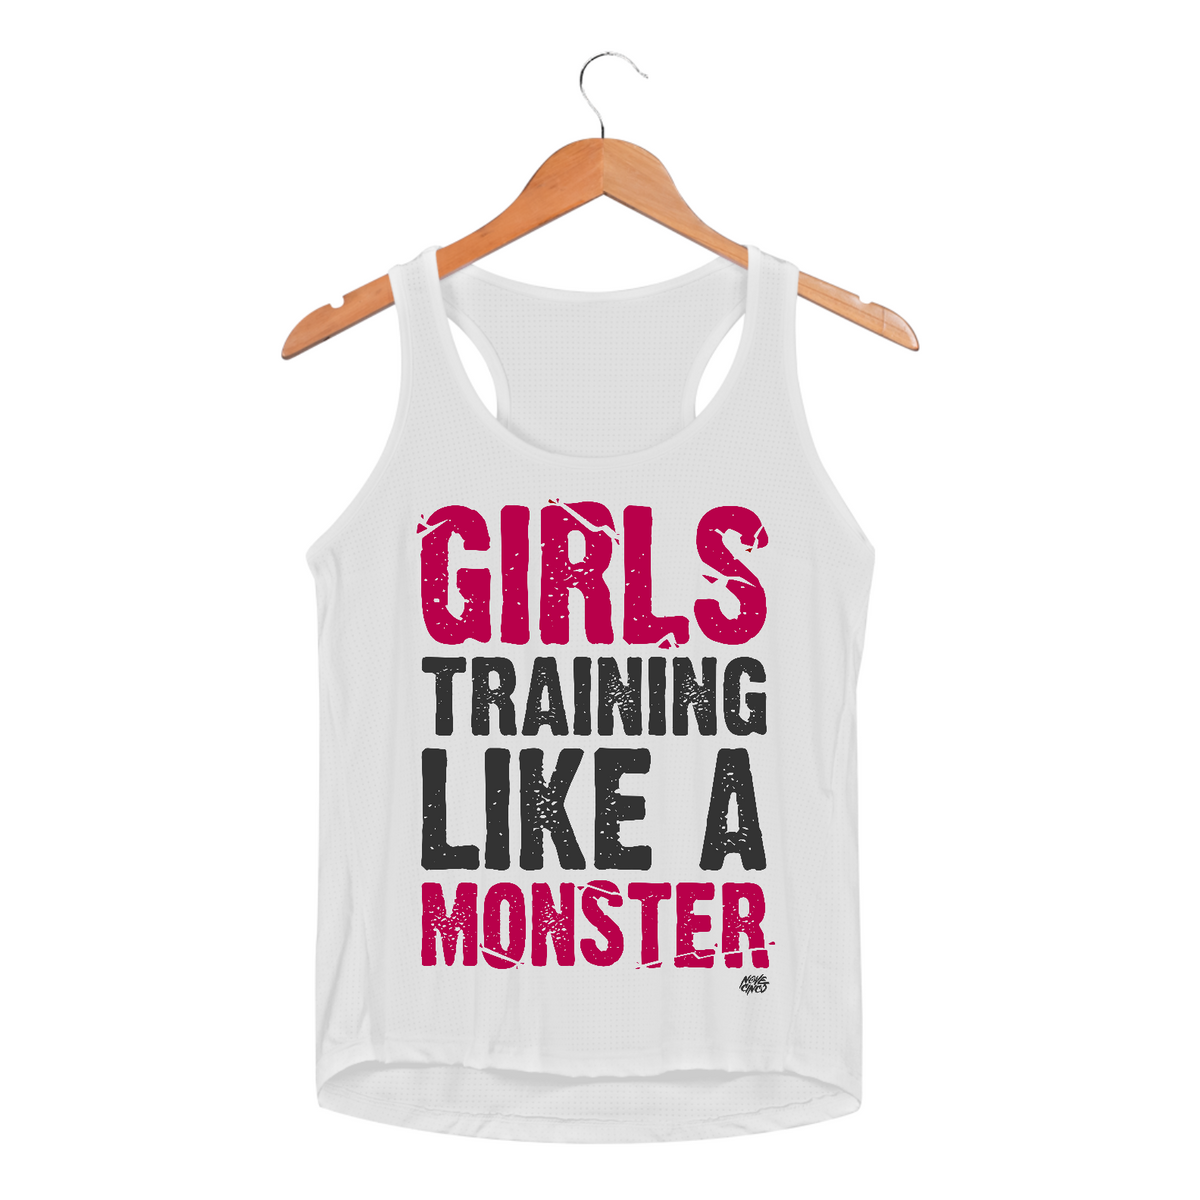 Nome do produto: Girls Training Like a Monster - Fem (Dry Fit)